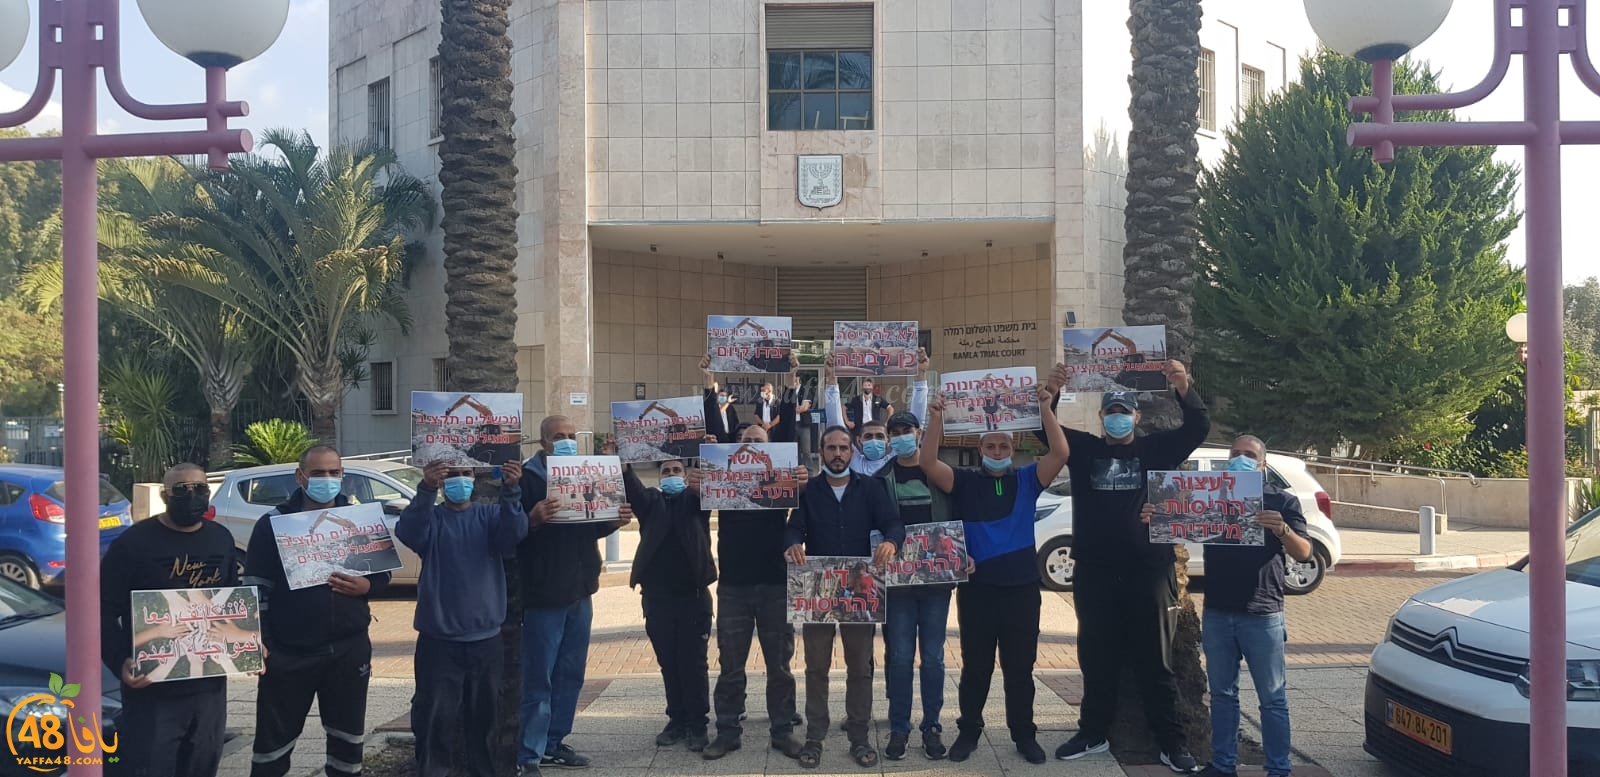 وقفة احتجاجية أمام محكمة الصلح بالرملة ضد قرارات هدم البيوت في اللد